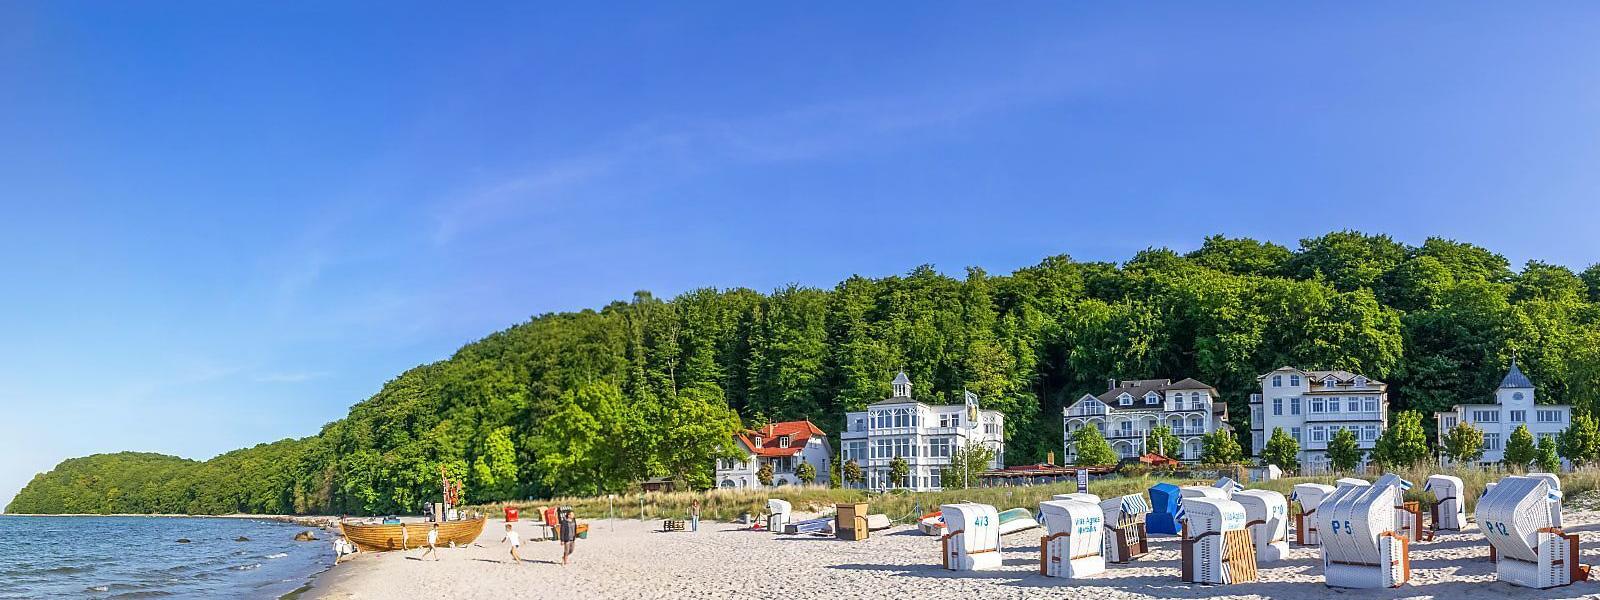 Luxus Ferienhäuser und Ferienwohnungen in Mecklenburg-Vorpommern - BELLEVUE Ferienhaus